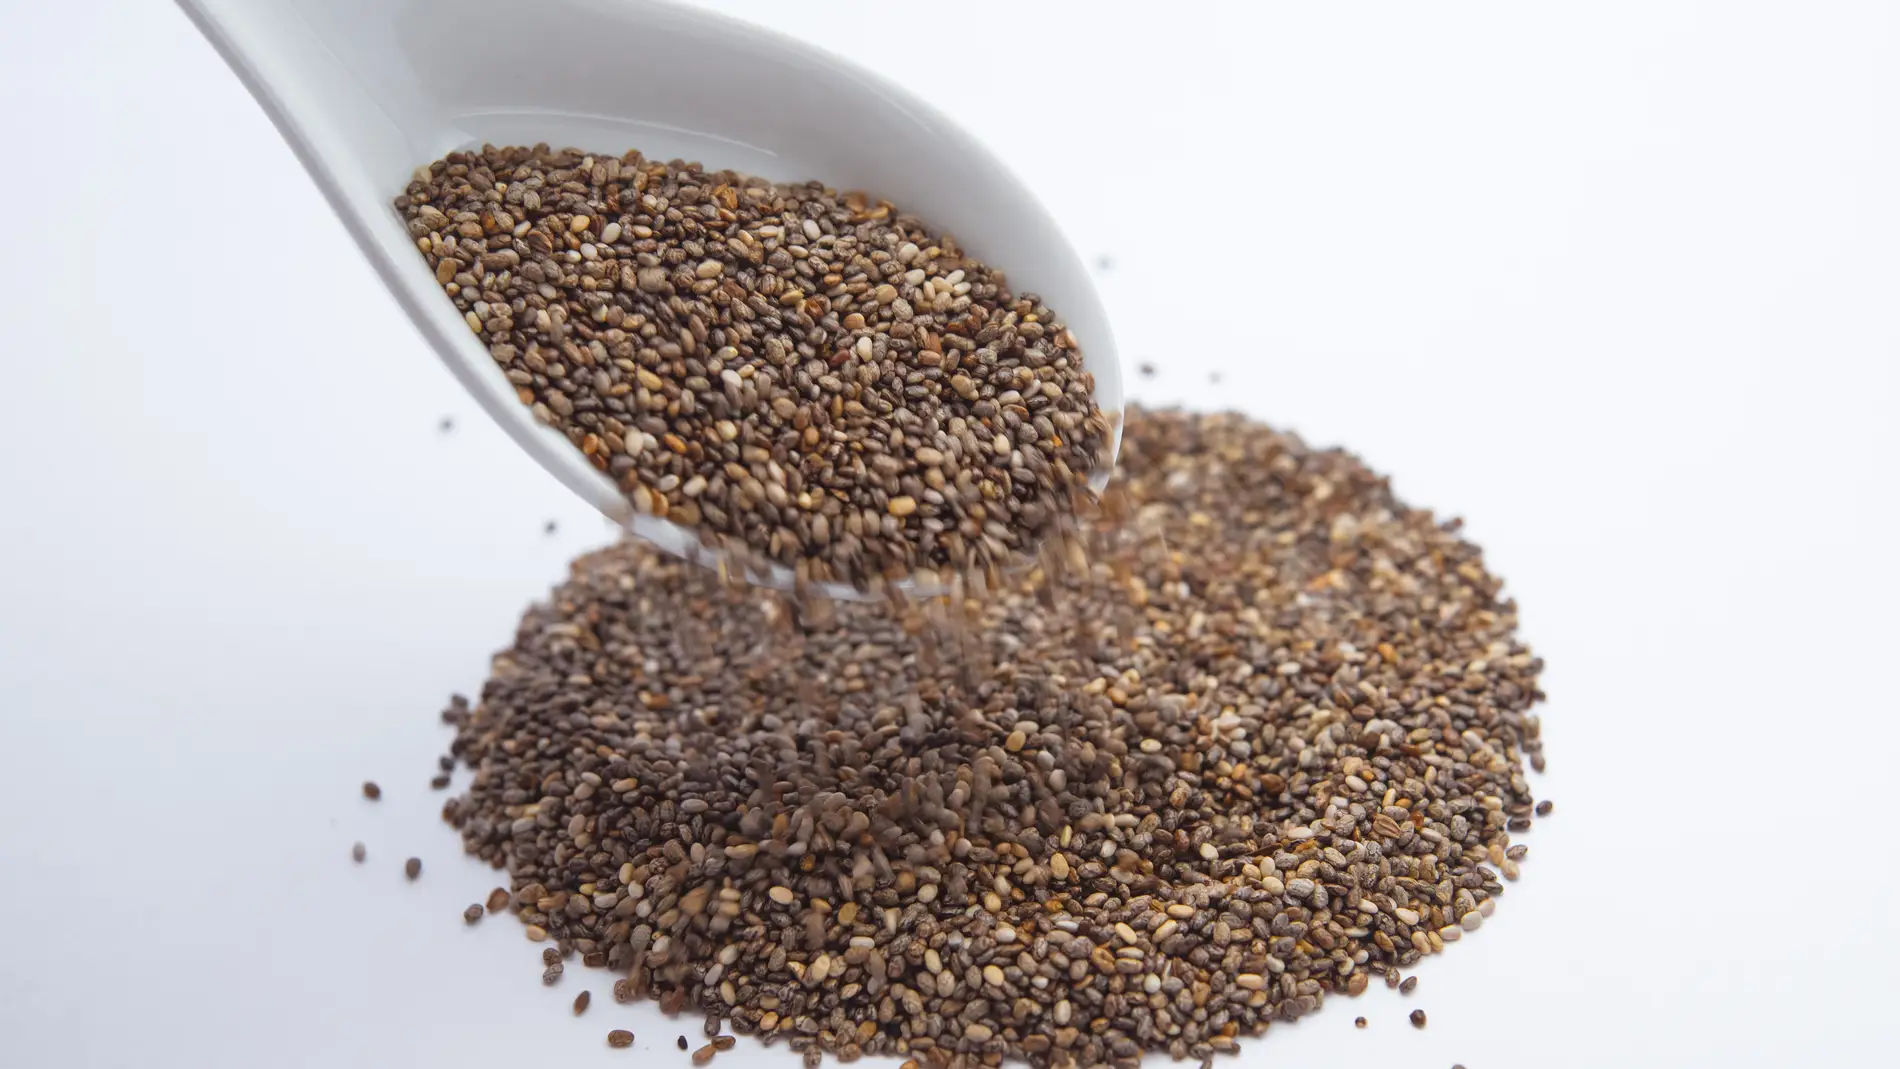 La fiebre de los superalimentos: quinoa, kale, semillas de chía... ¿son reales sus beneficios?